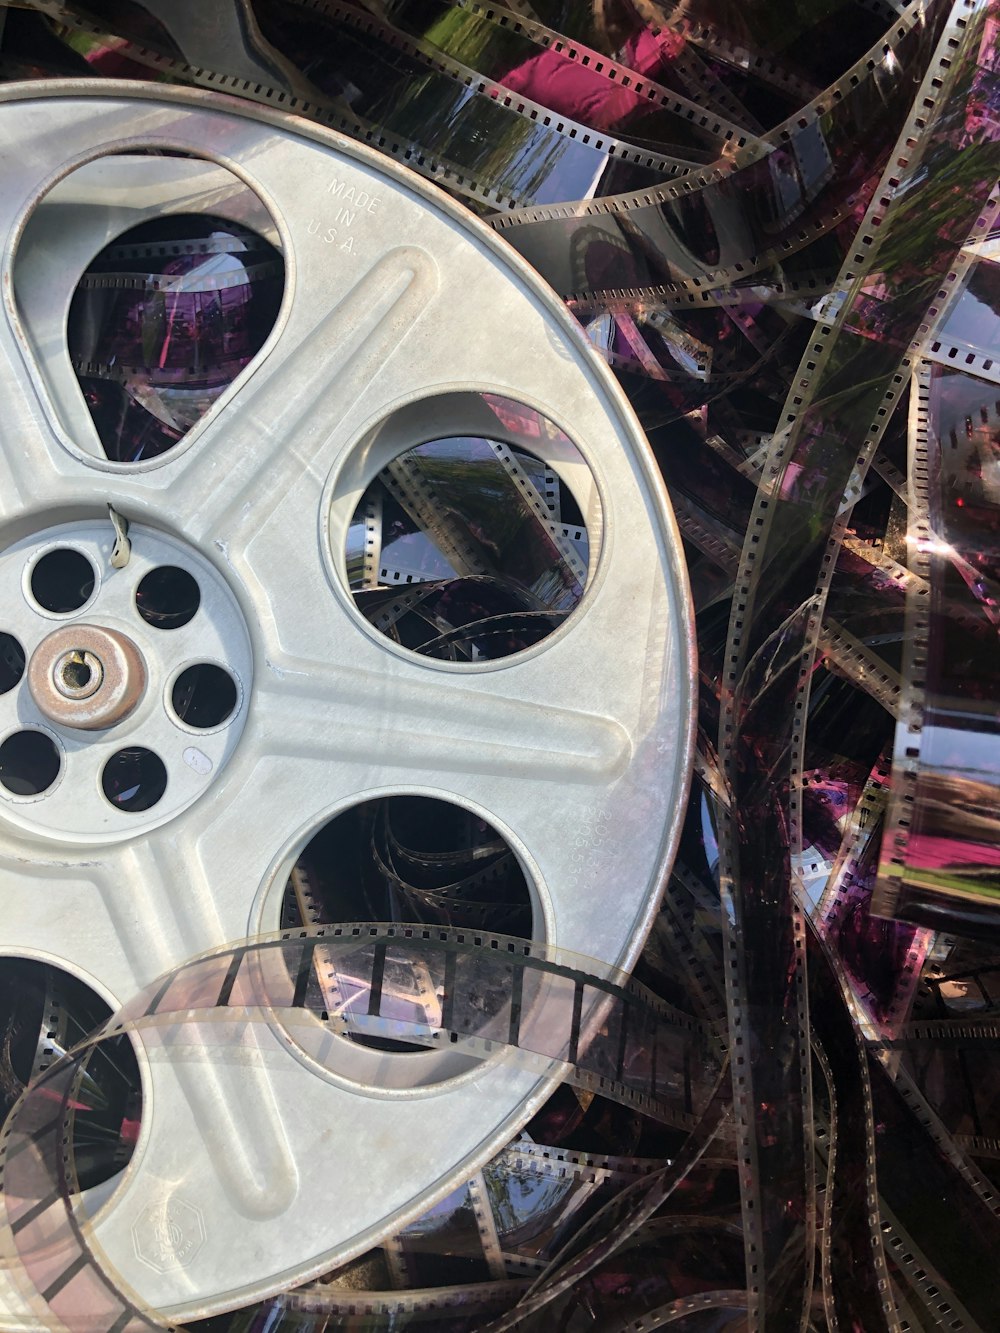 a close up of a car wheel